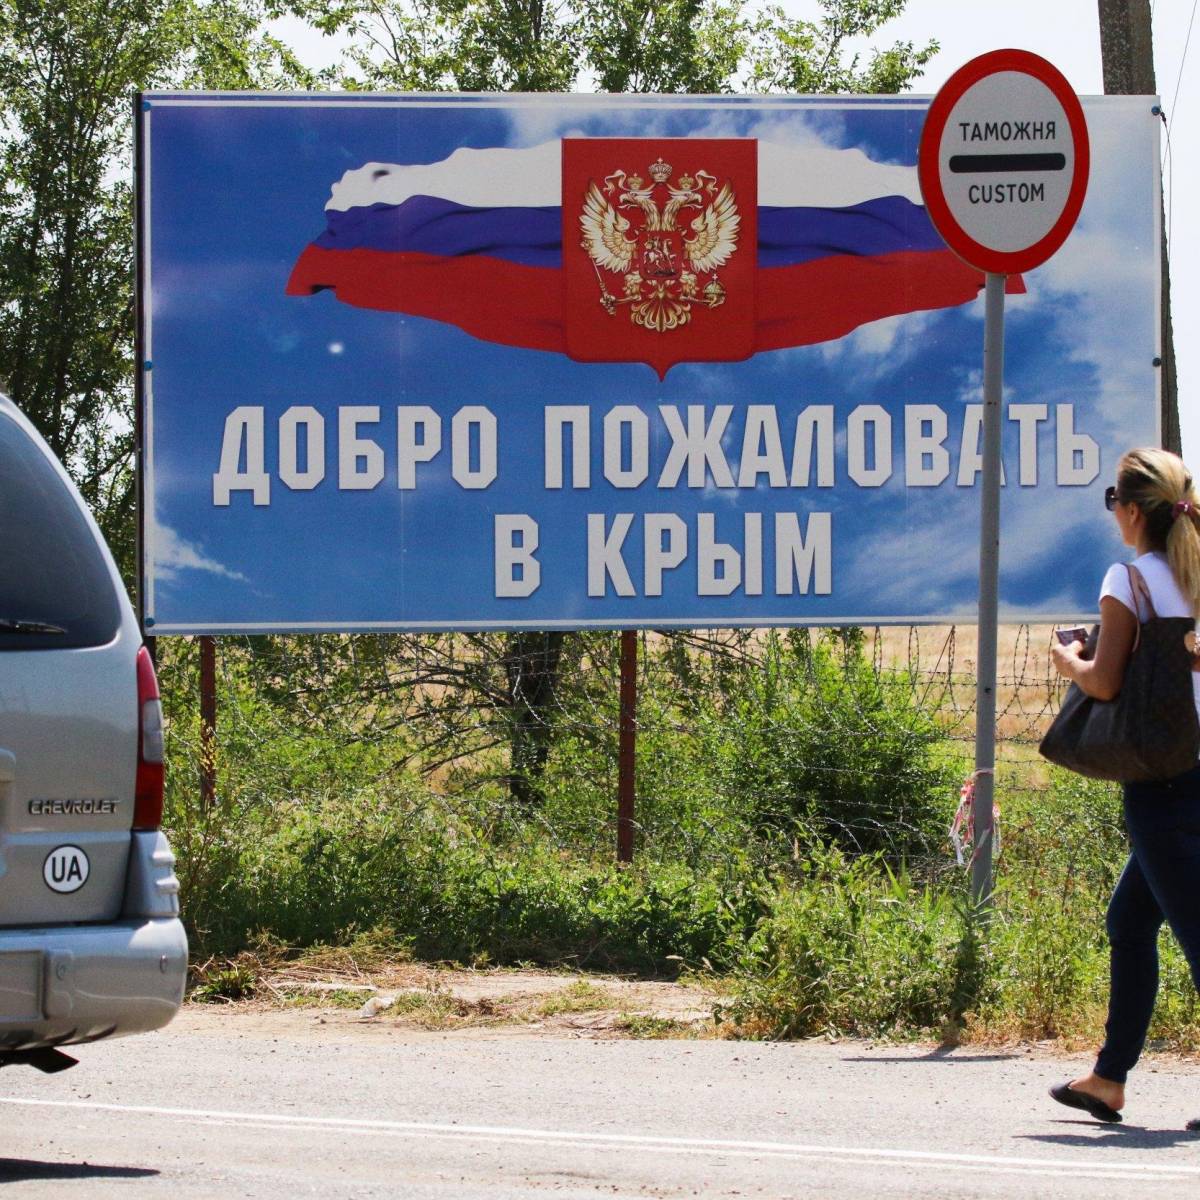 Туристы разобрали главные вопросы о путешествии в Крым